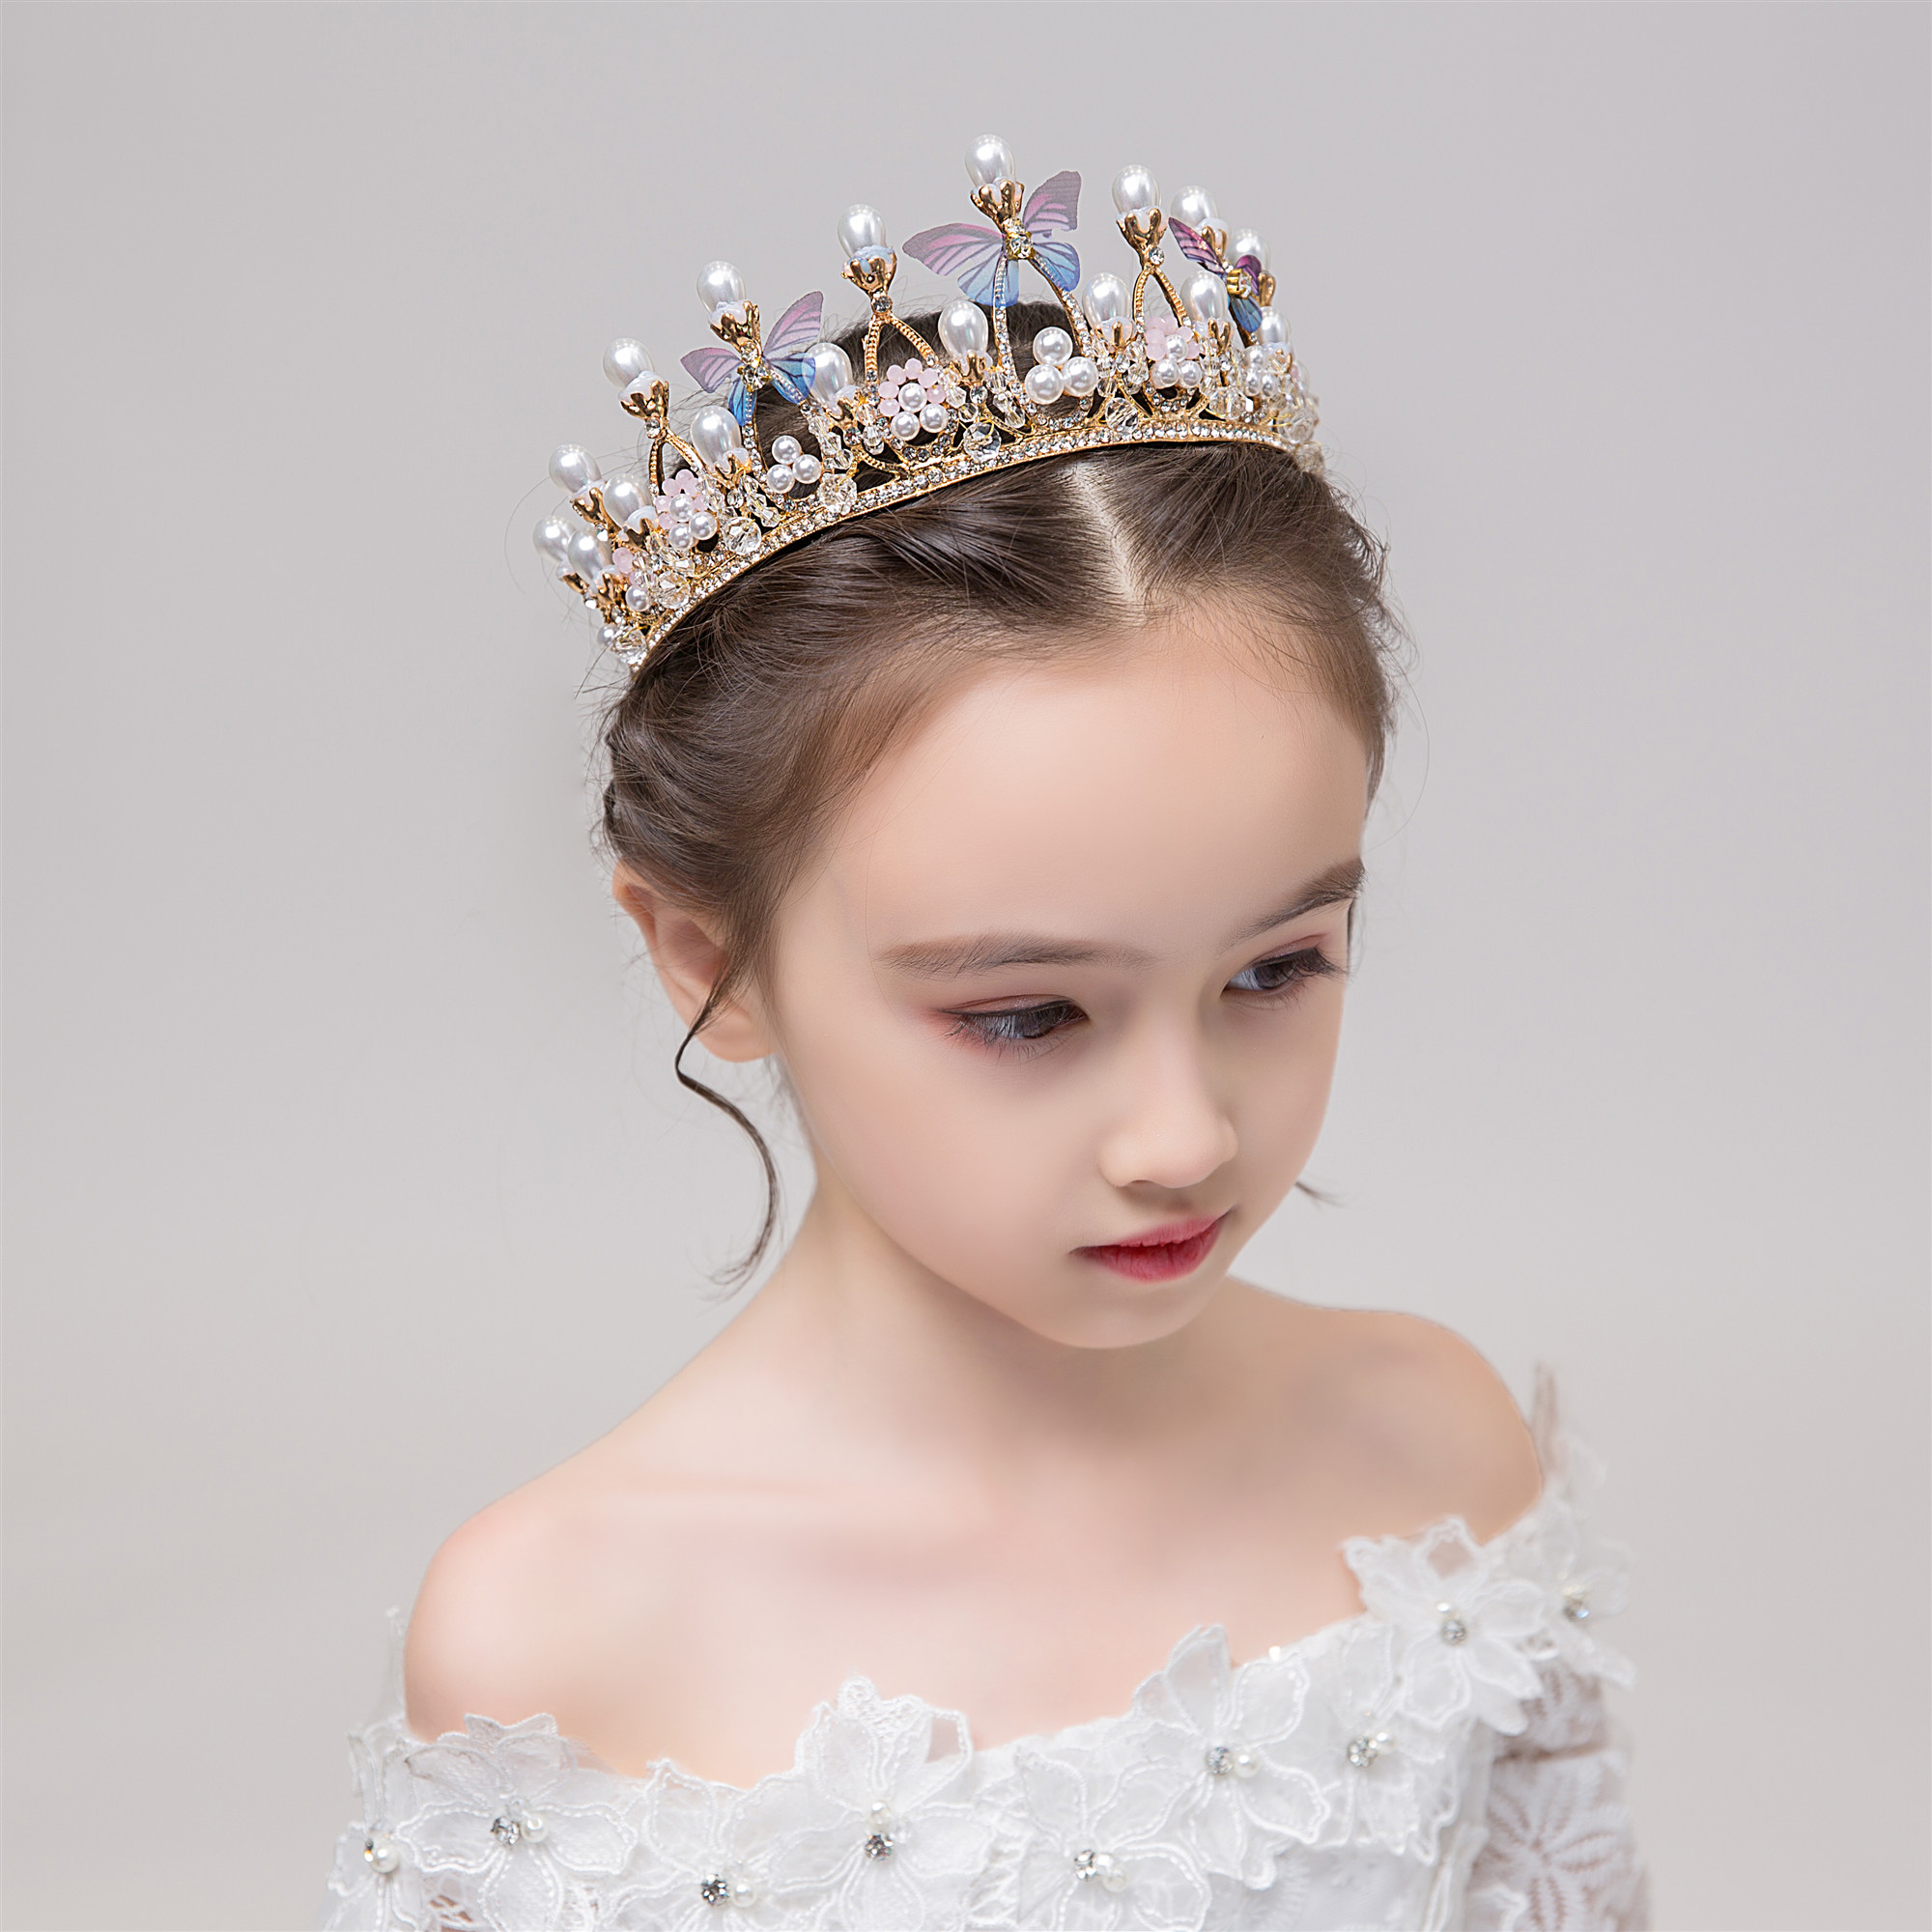 共584 件儿童发饰珍珠皇冠发箍相关商品